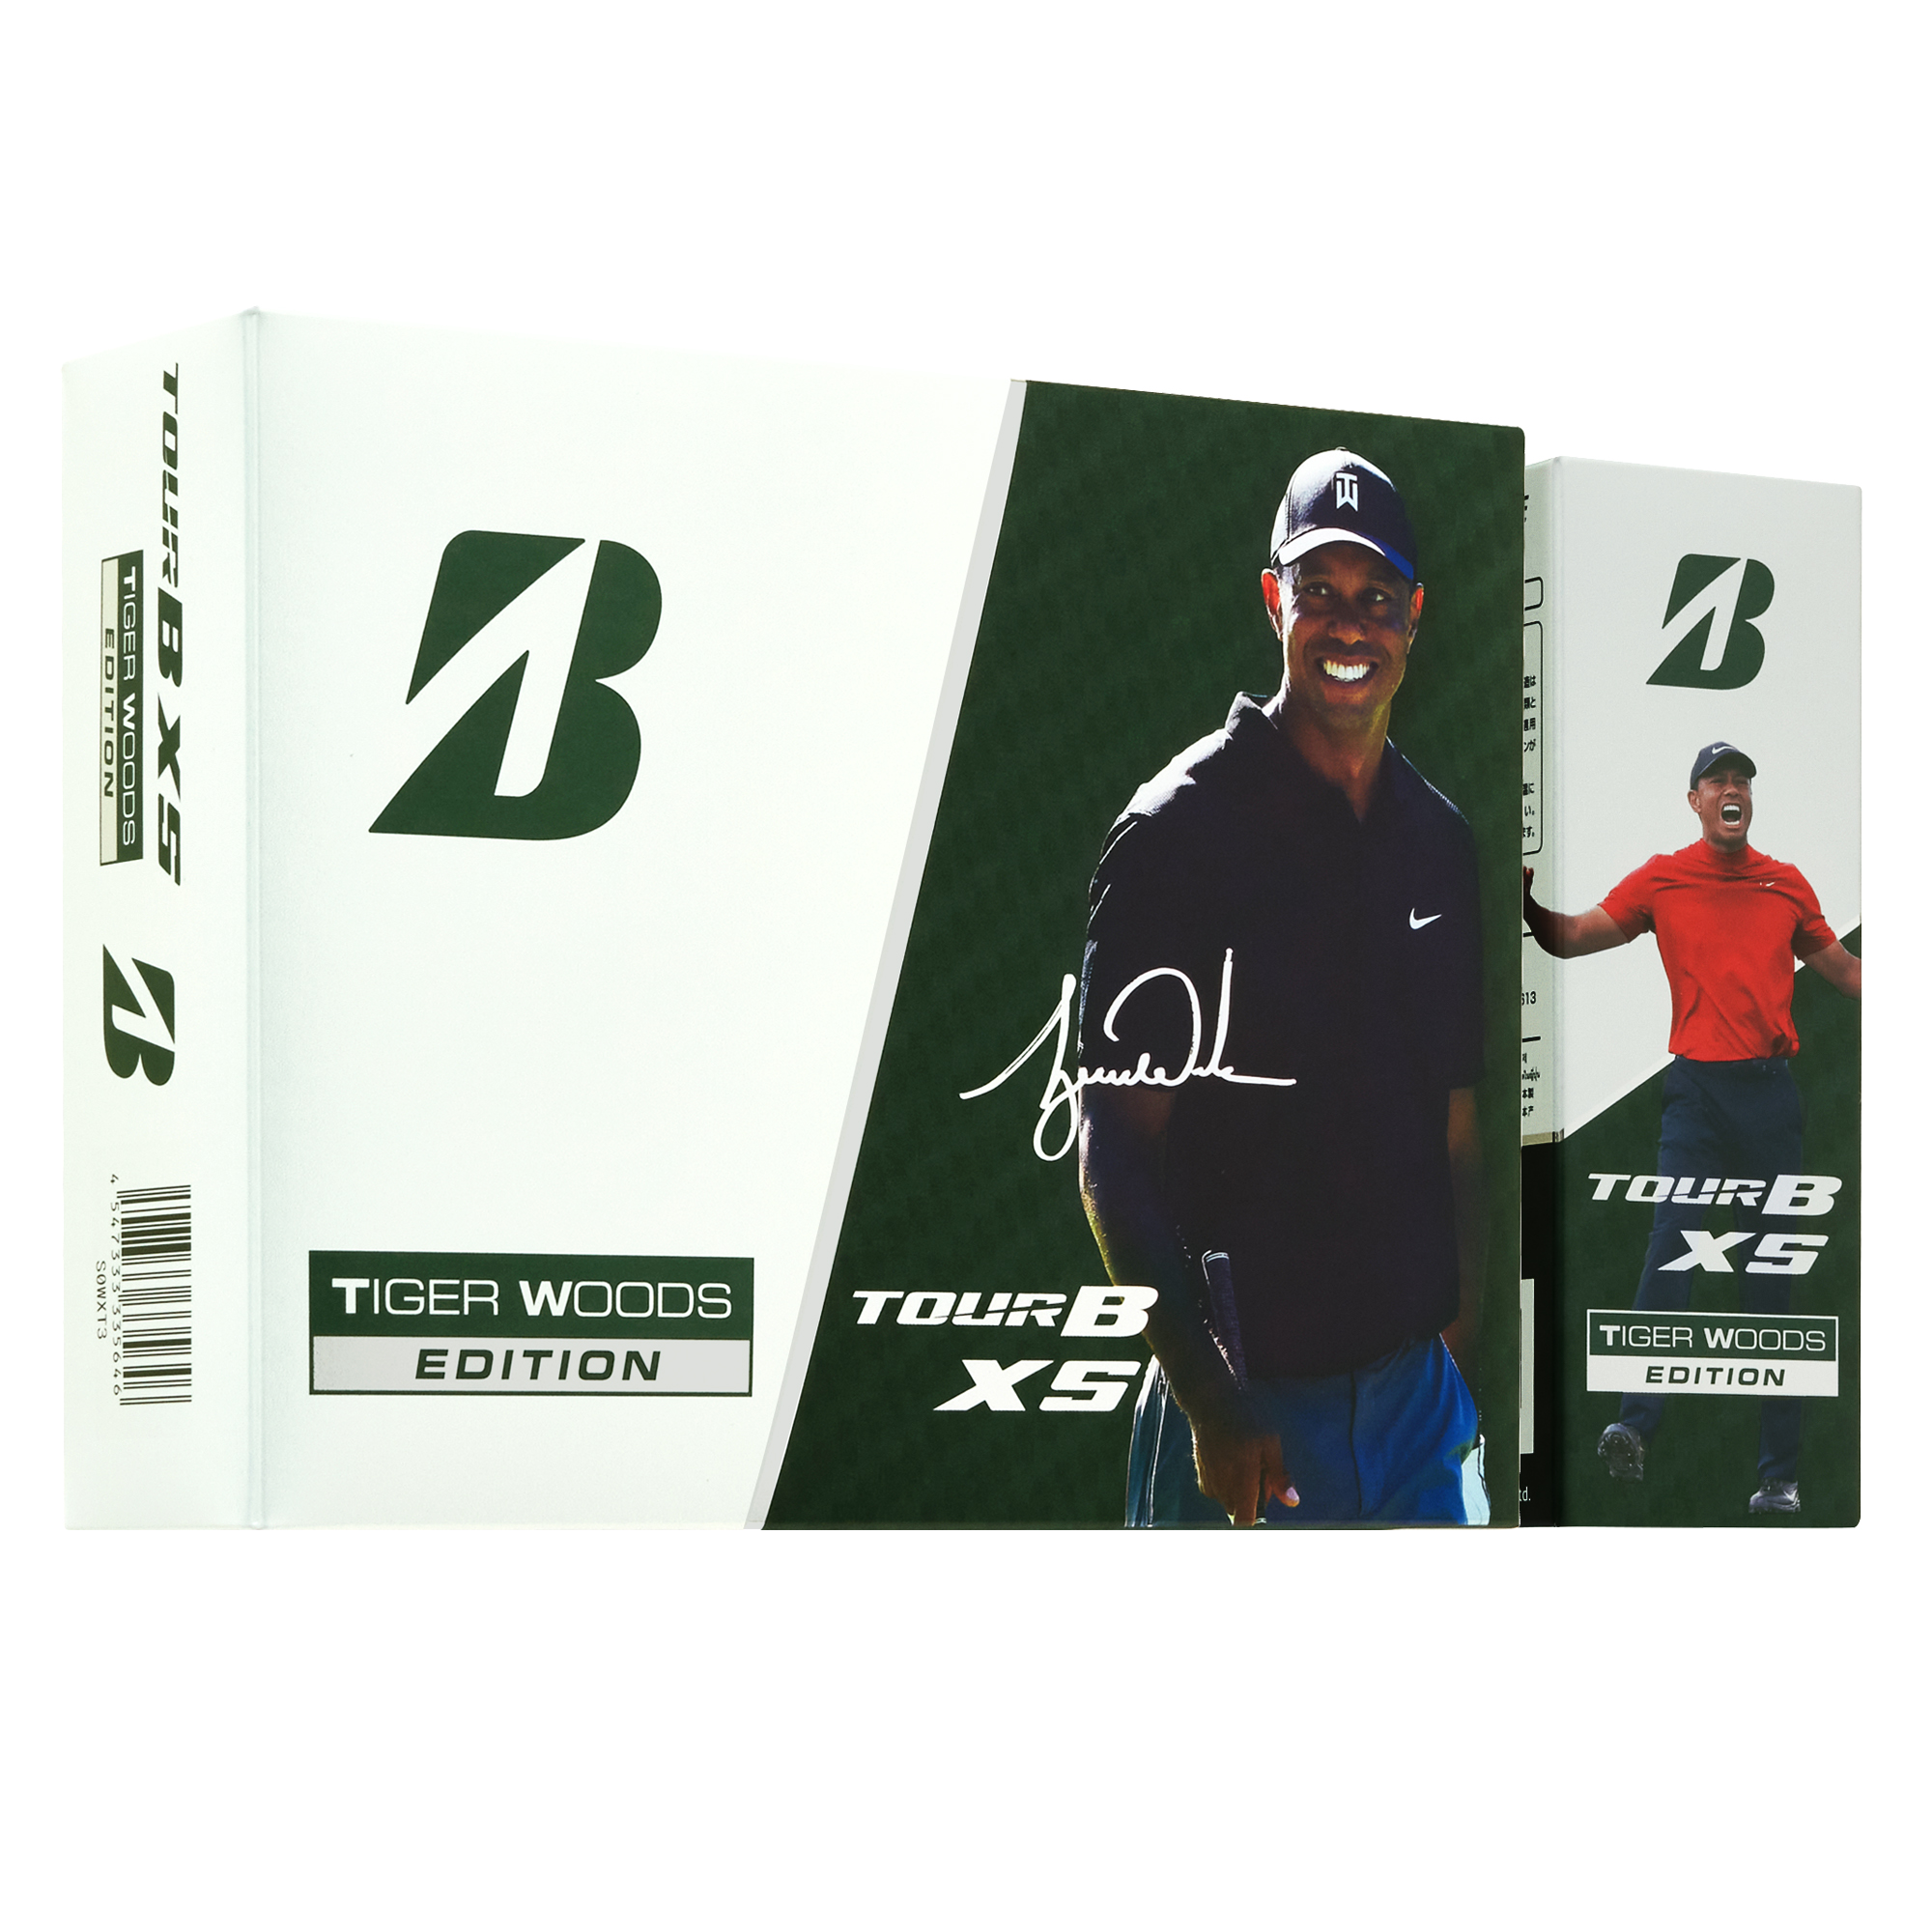 ゴルフボール Tour B Xs Tiger Woods Edition 新発売 ブリヂストンスポーツ株式会社のプレスリリース